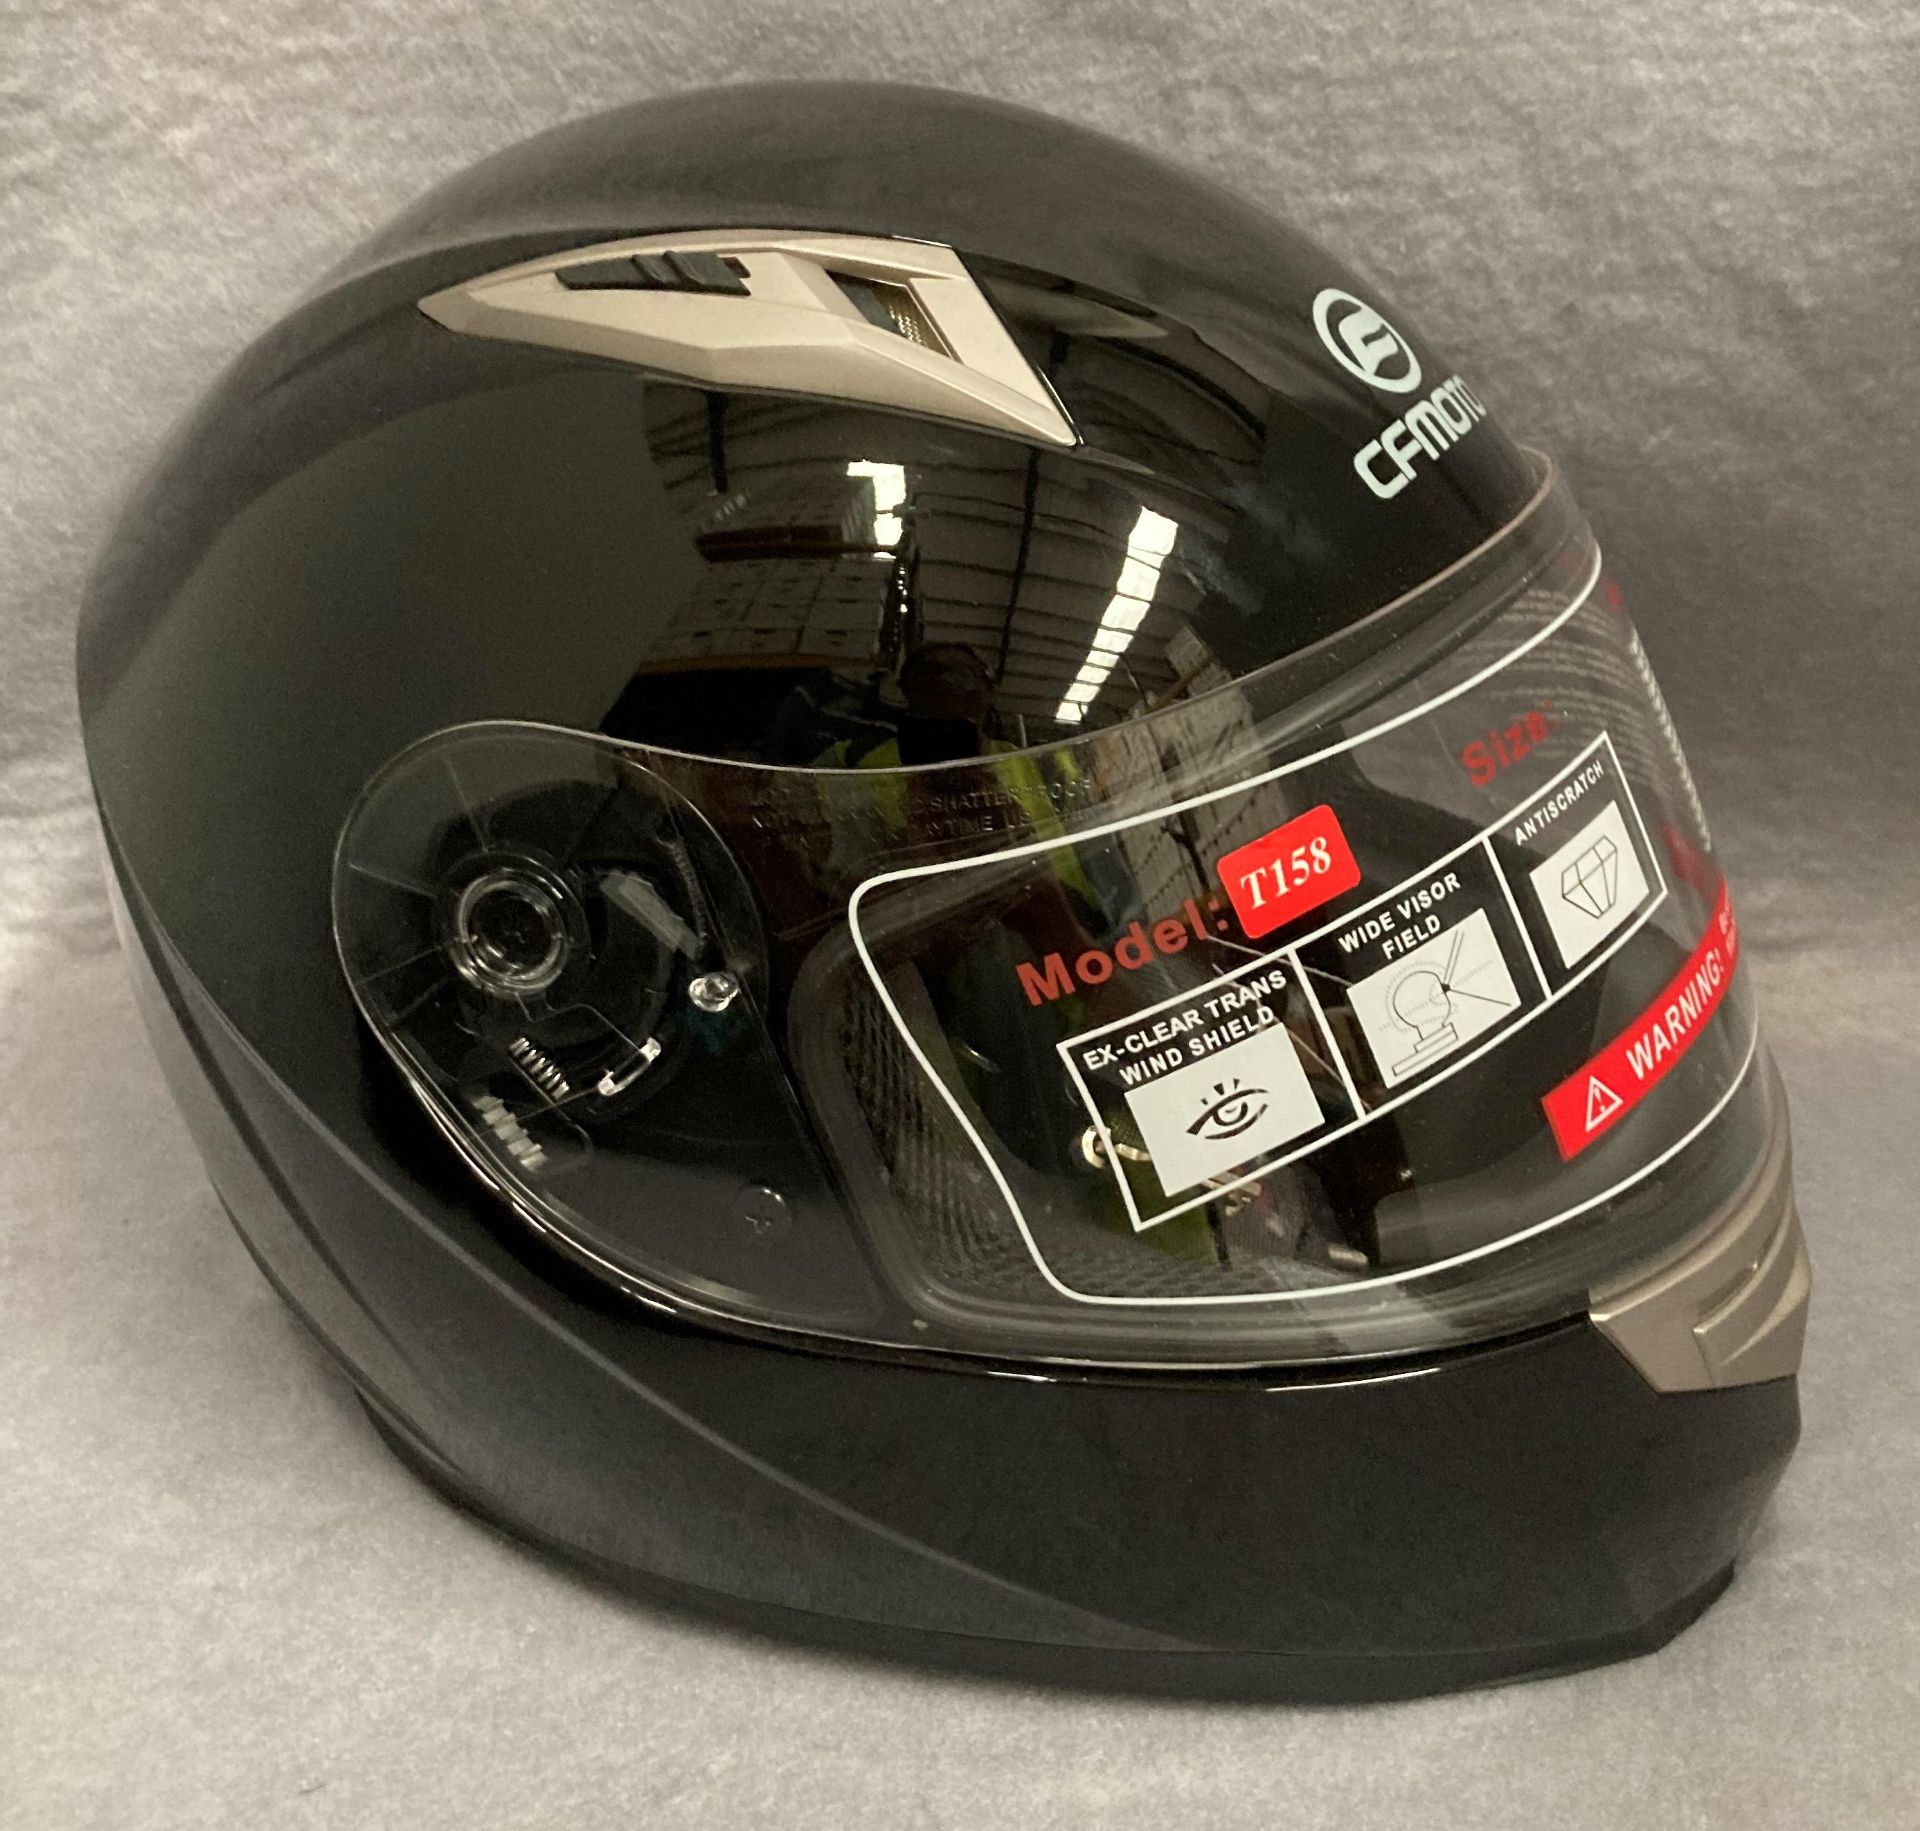 CF Moto T158 motorbike helmet in black - size L - in a dust bag,